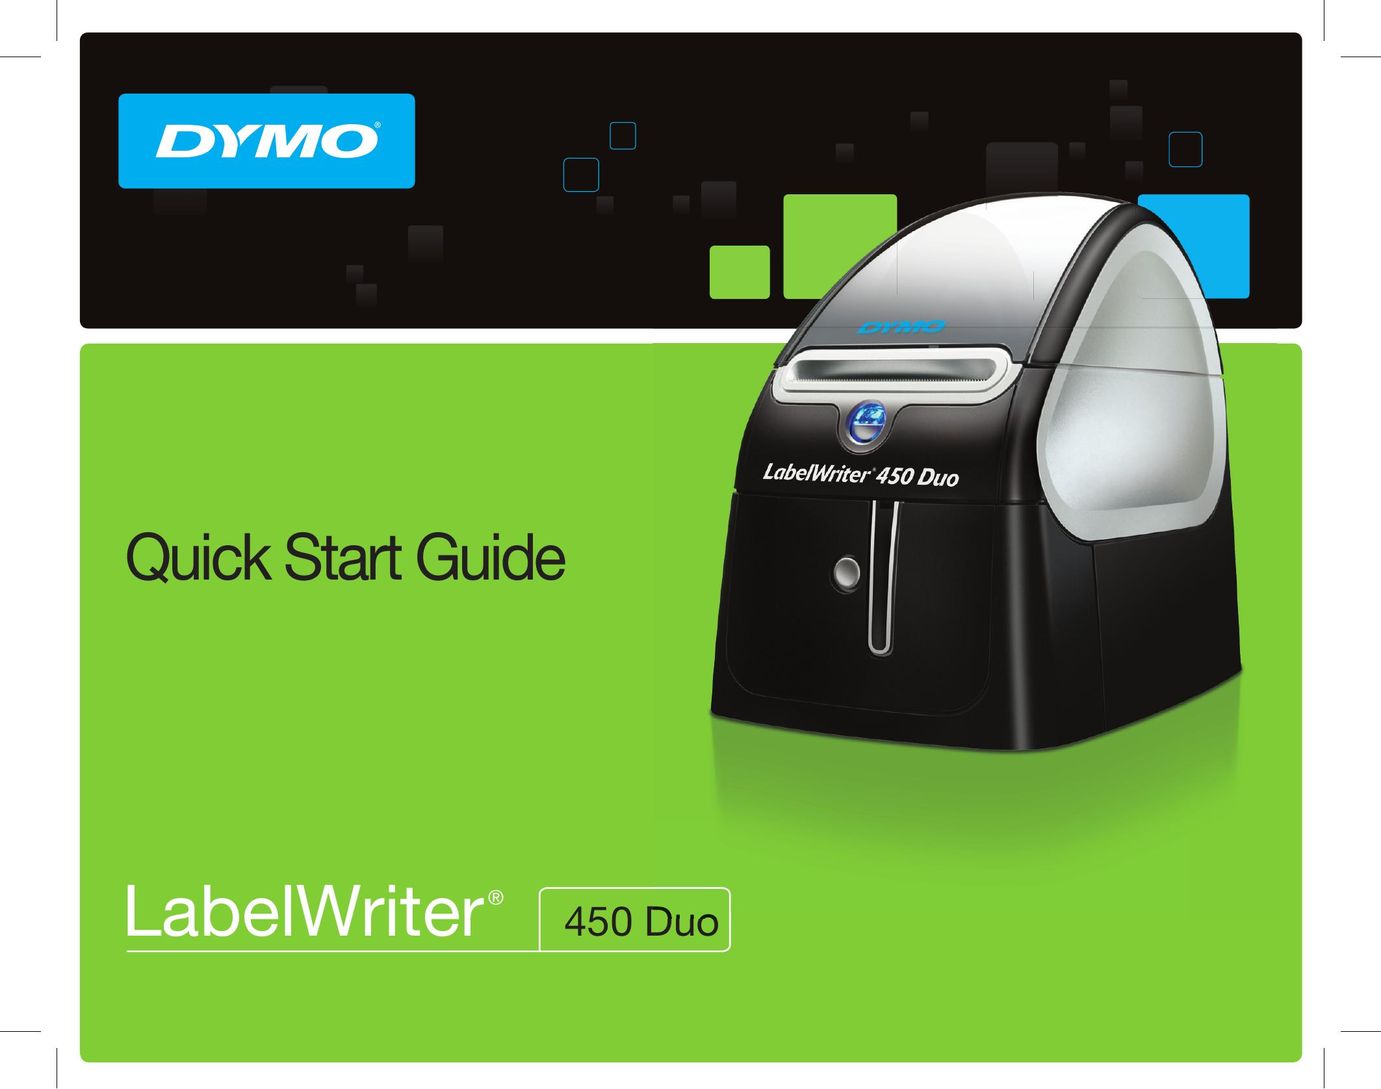 Dymo 450 DUO Label Maker User Manual